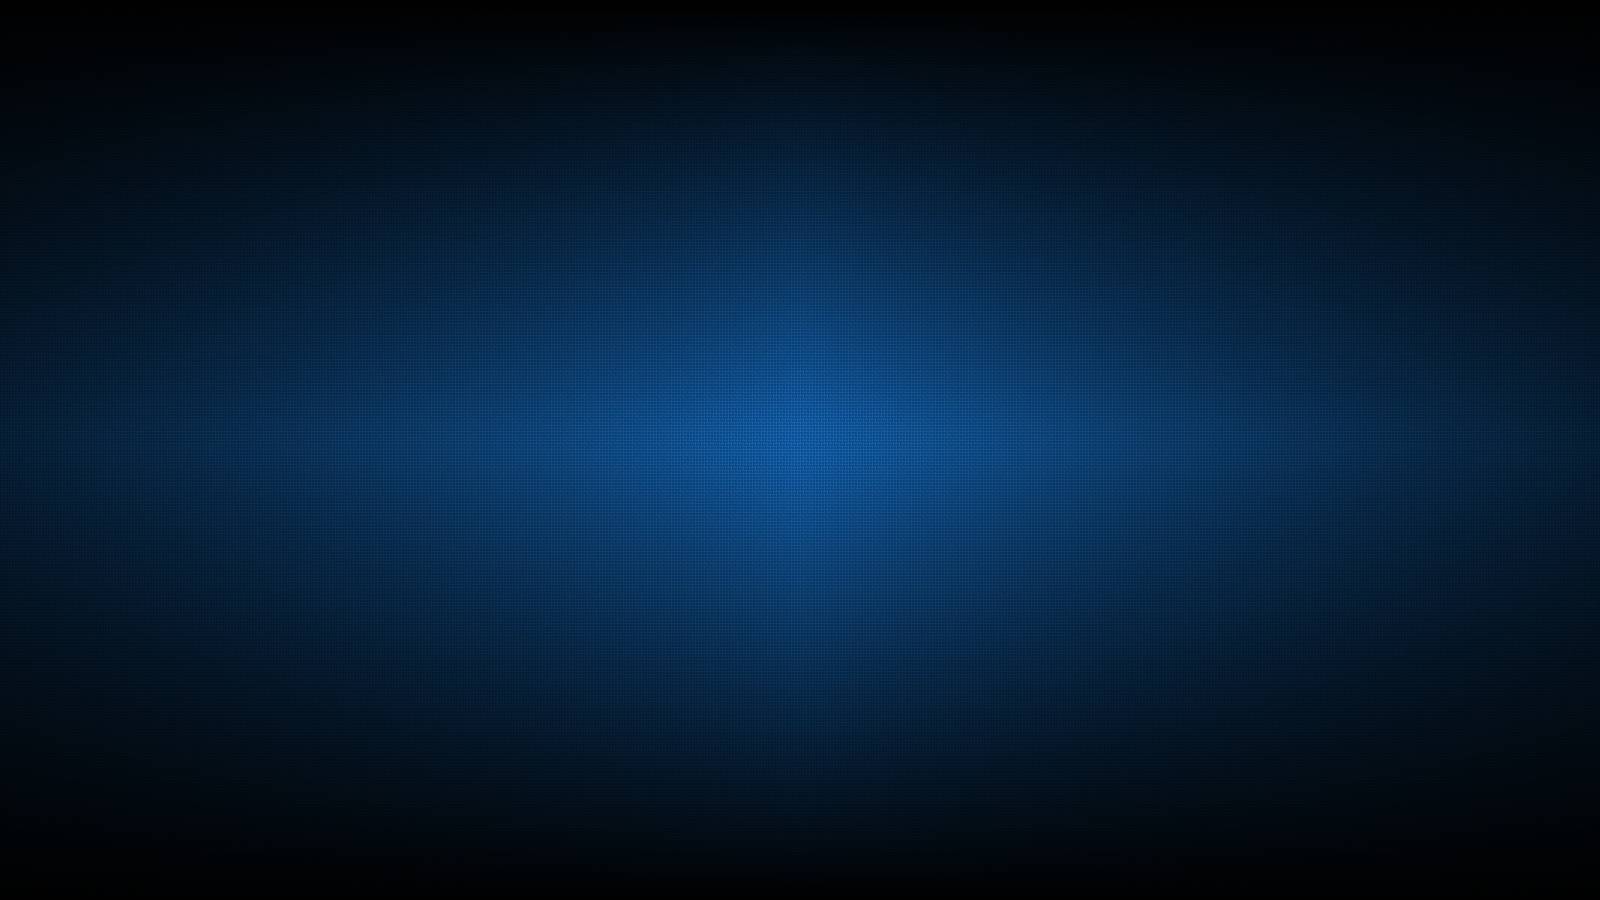 Fondos de pantalla azul oscuro - FondosMil